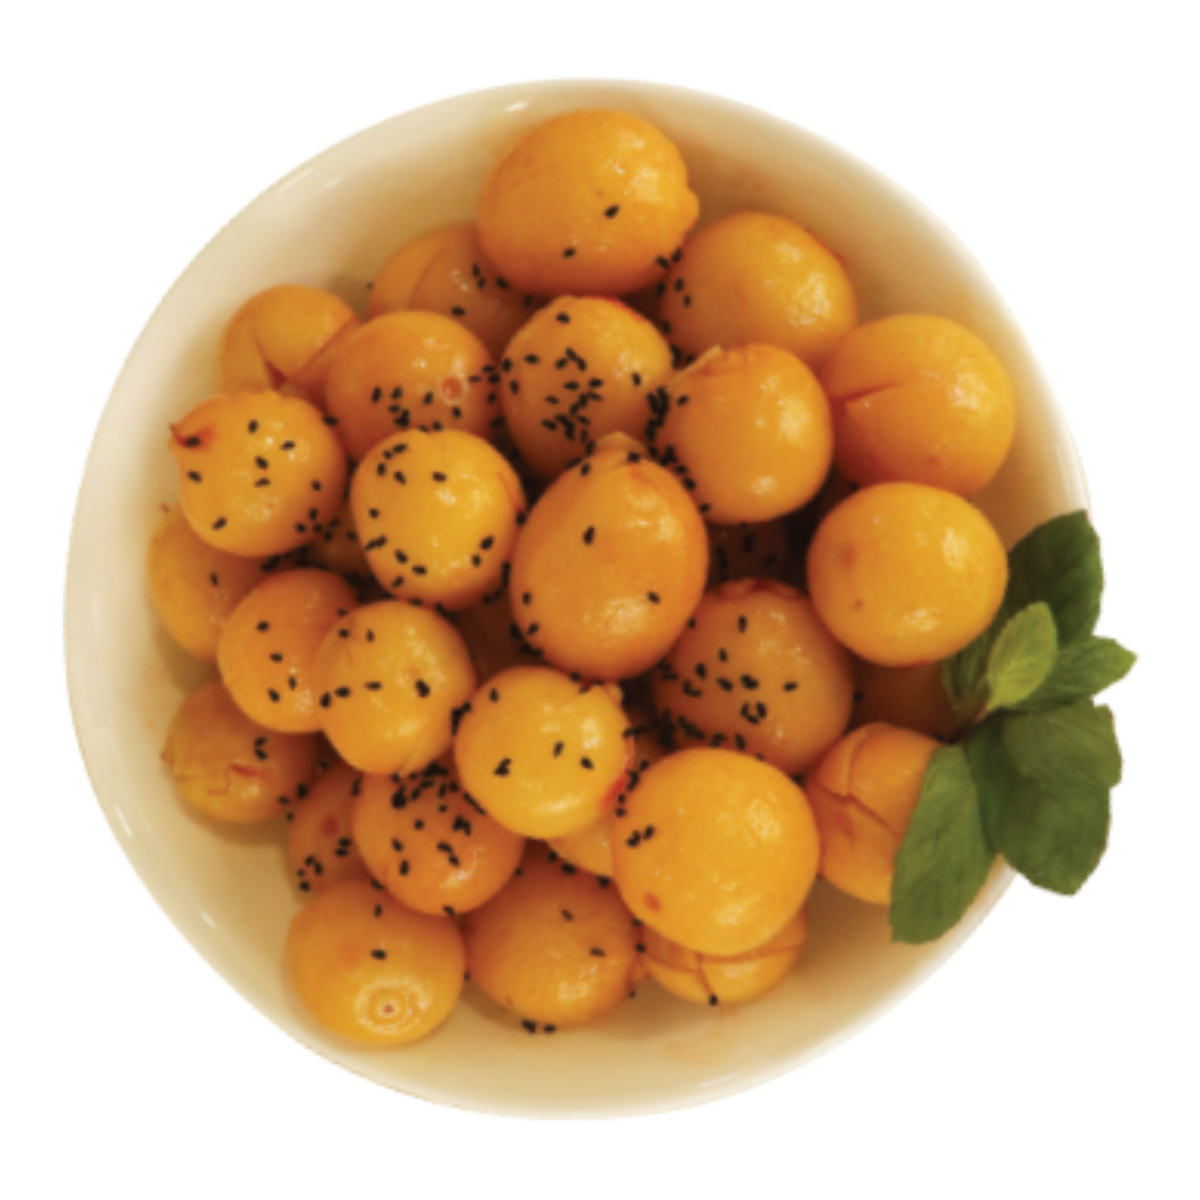 Buy Egyptian Lemon with Black Seeds 250g Online at Best Price | European Pickles | Lulu KSA in Saudi Arabia